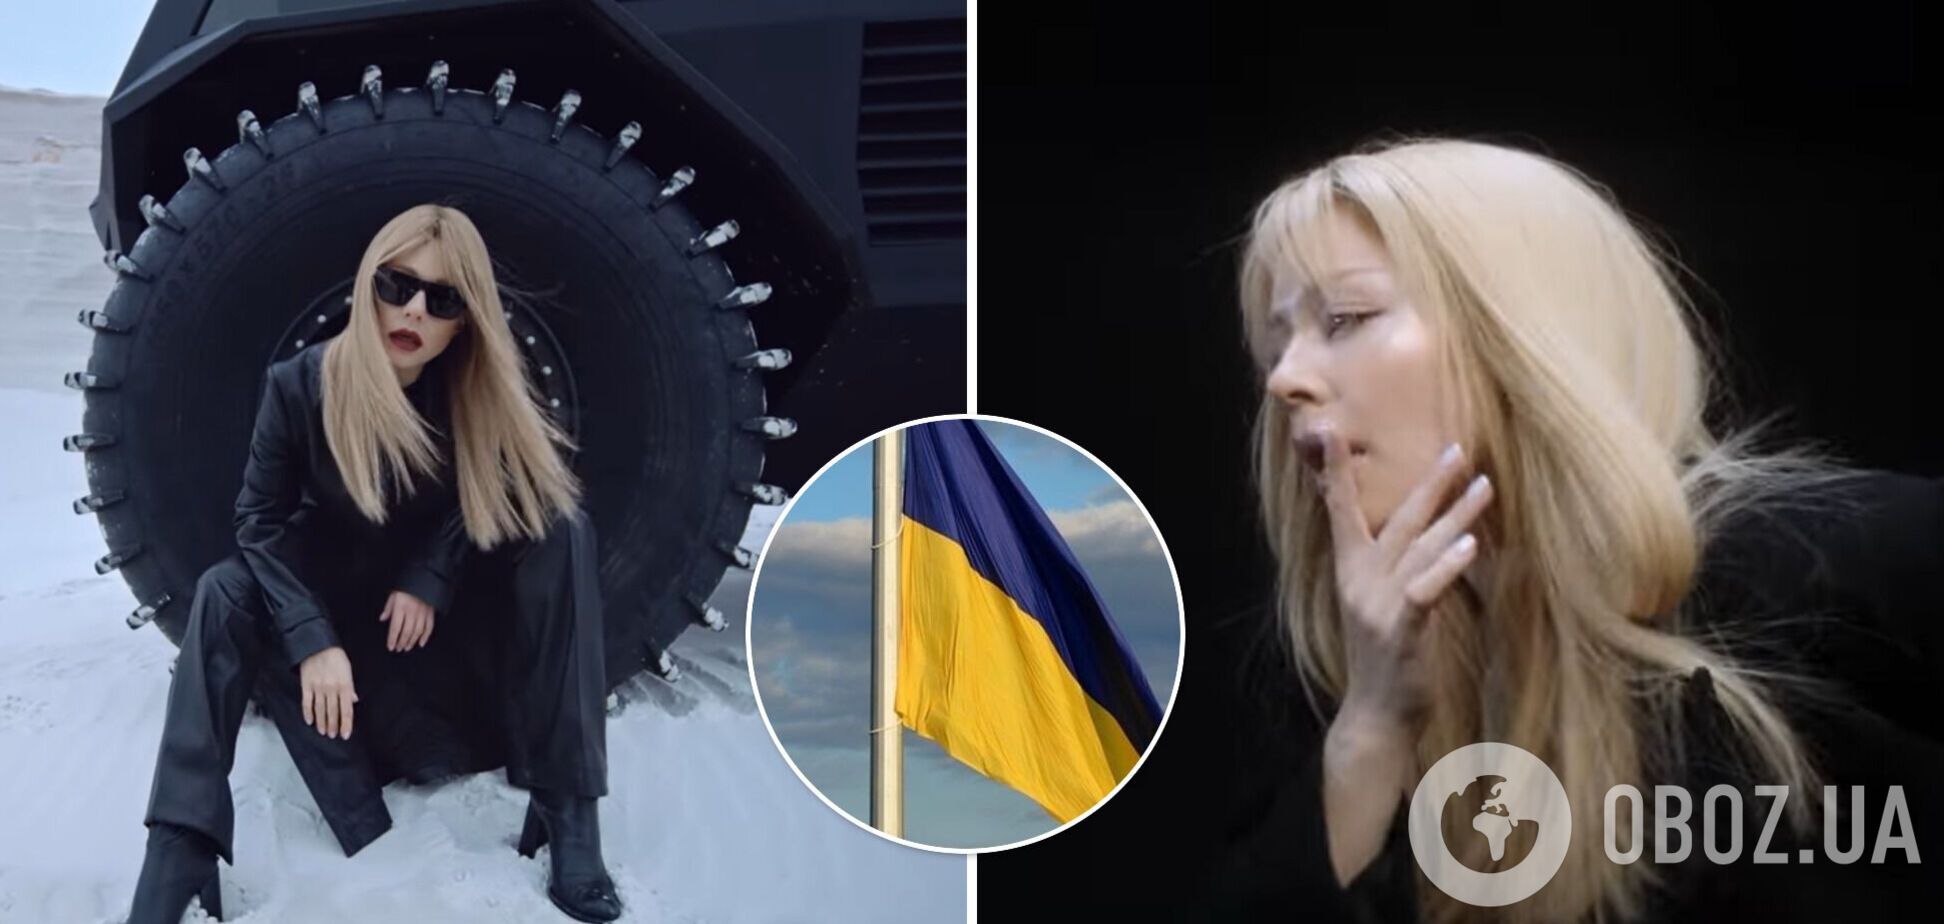 Тина Кароль представила долгожданный клип на песню 'Вільні. Нескорені', мотивирующую на победу